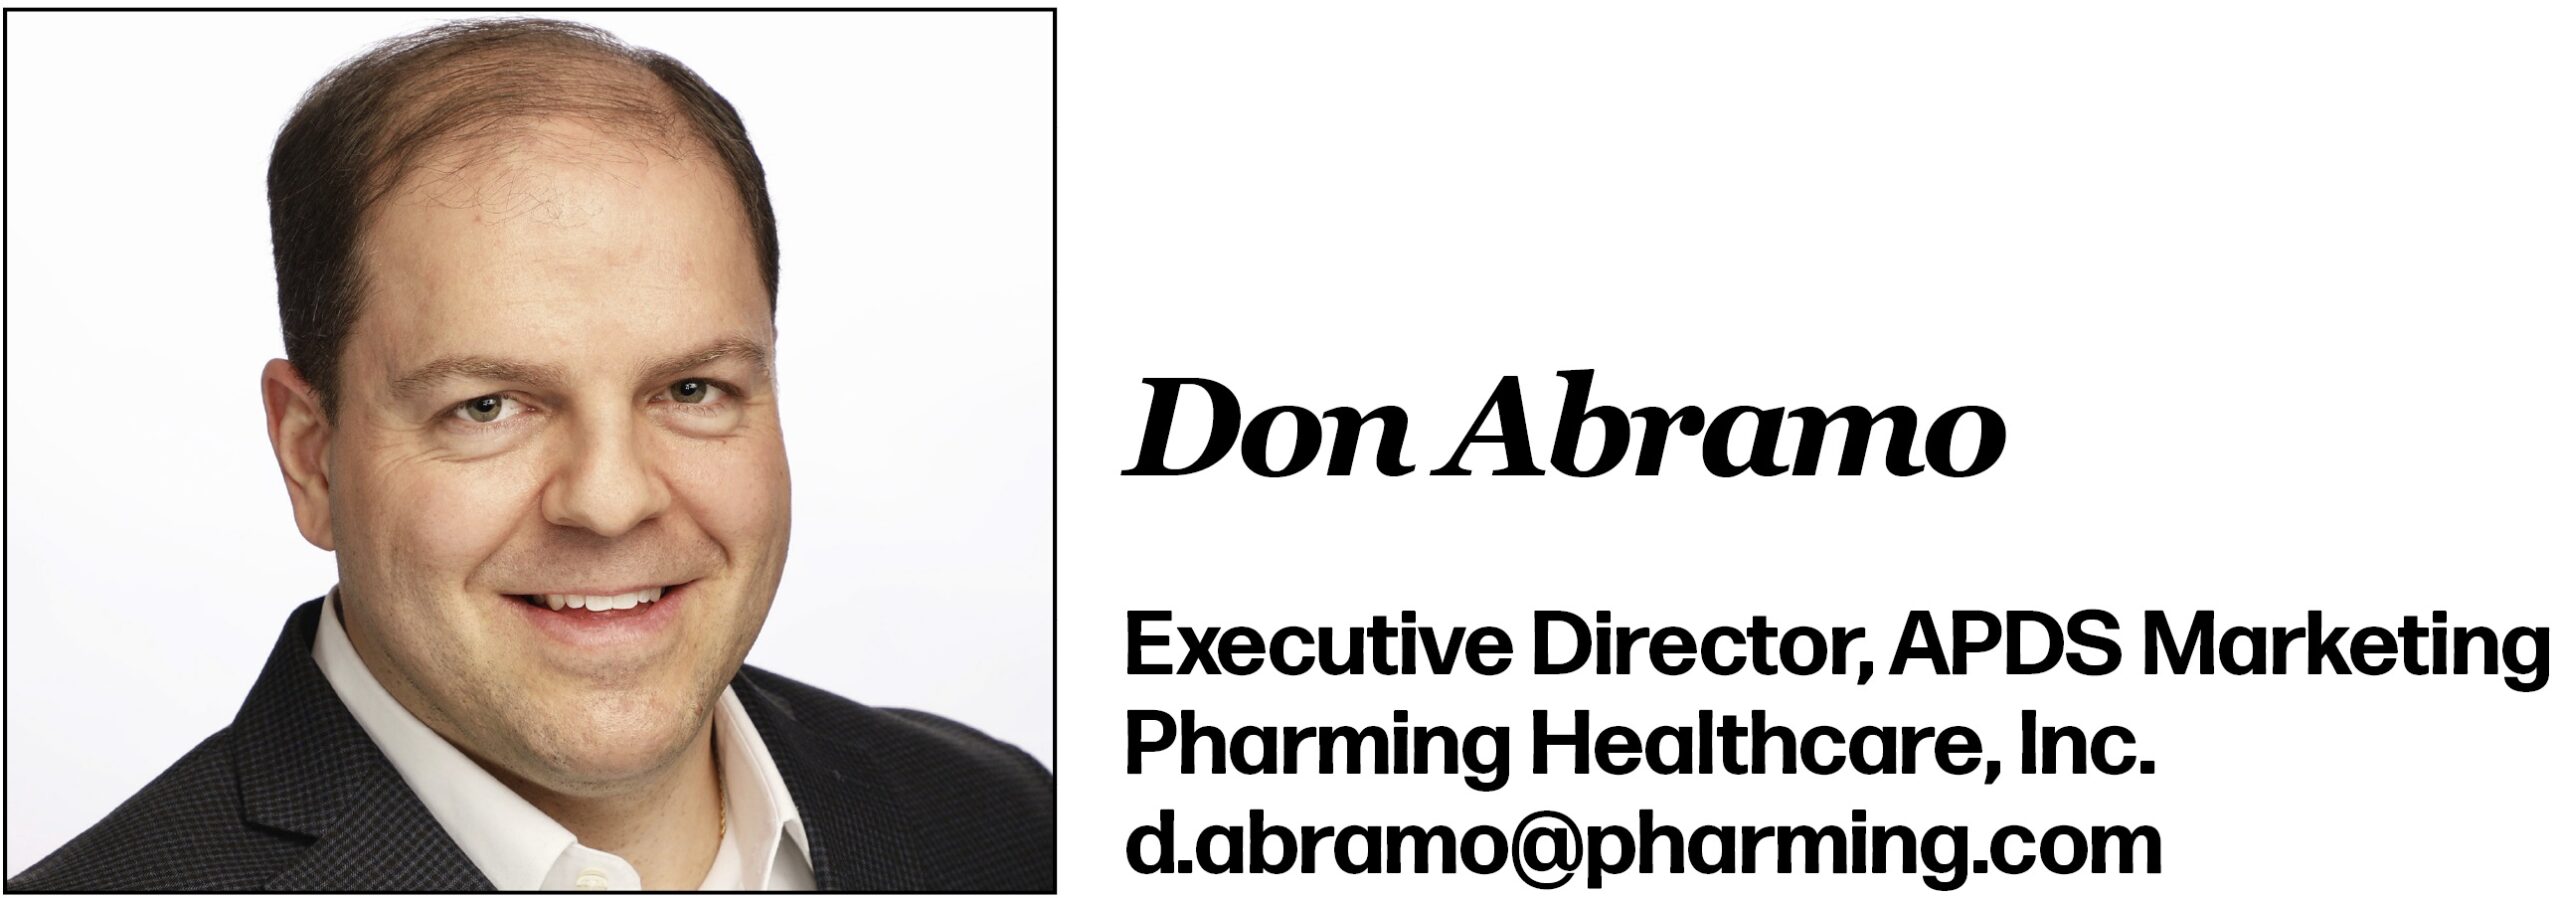 Don Abramo Executive Director, APDS Marketing Pharming Healthcare, Inc. d.abramo@pharming.com